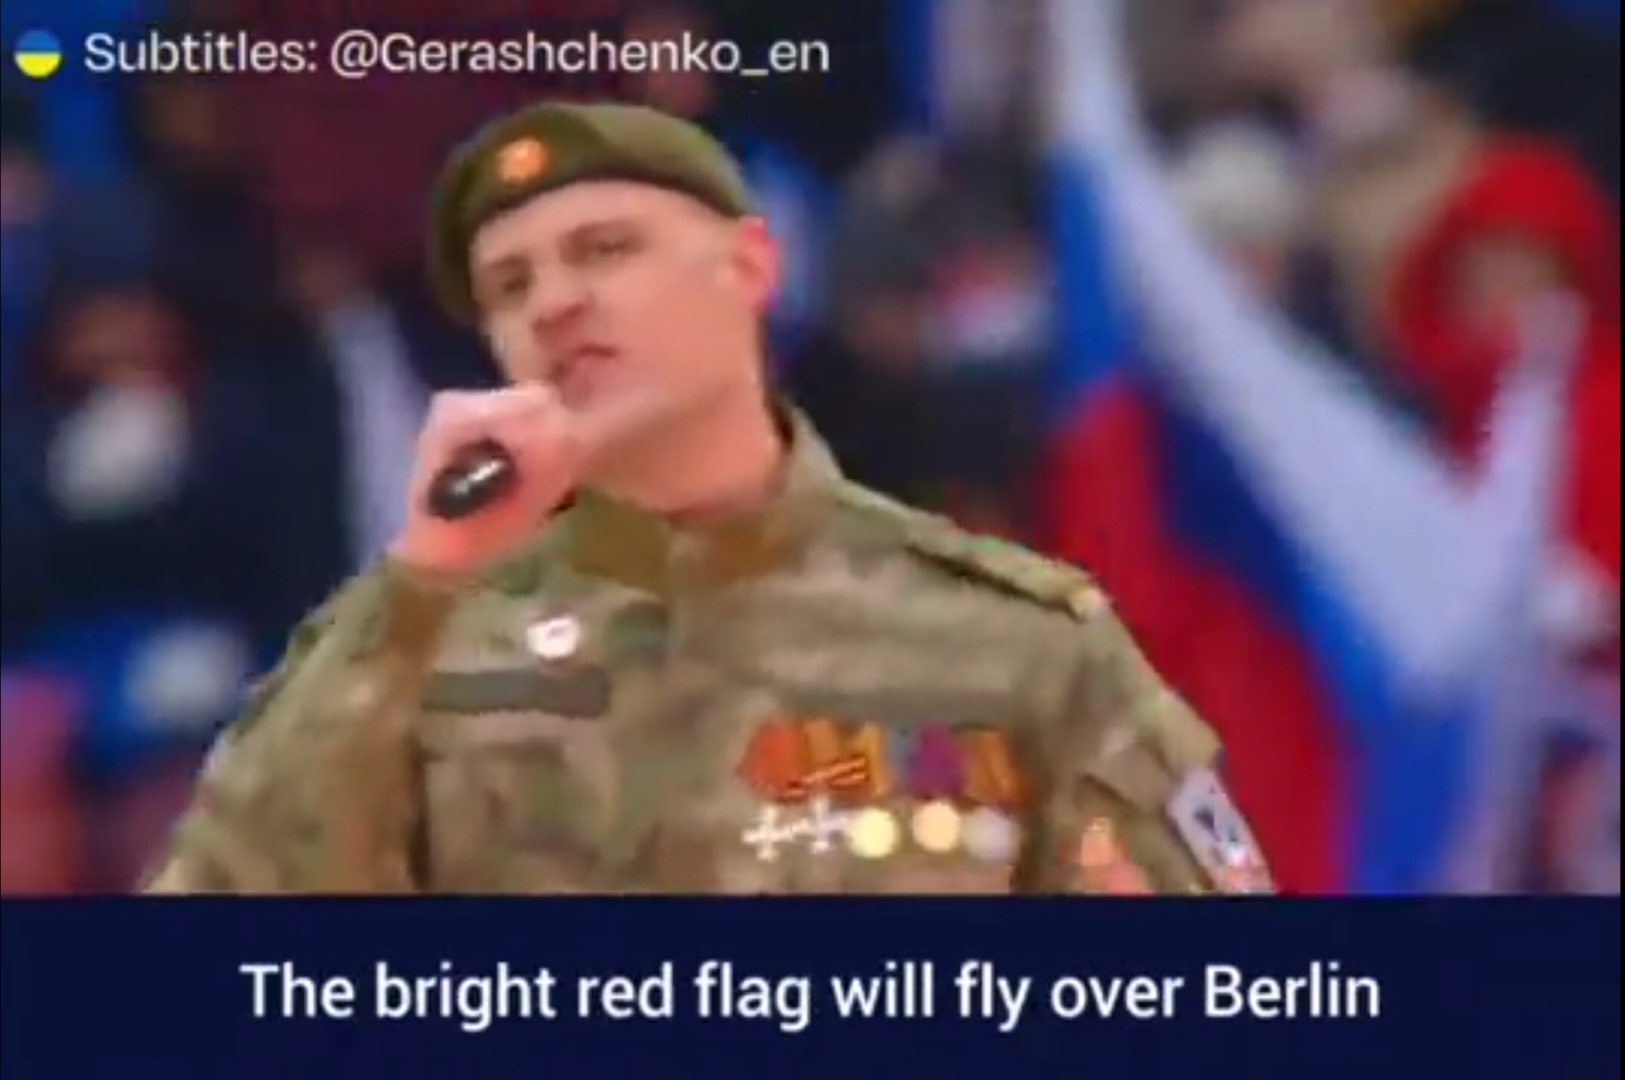 Russische Propagandaveranstaltung zum Jahrestag der Überfalls auf die Ukraine kündigt "rote Fahnen über Berlin" an